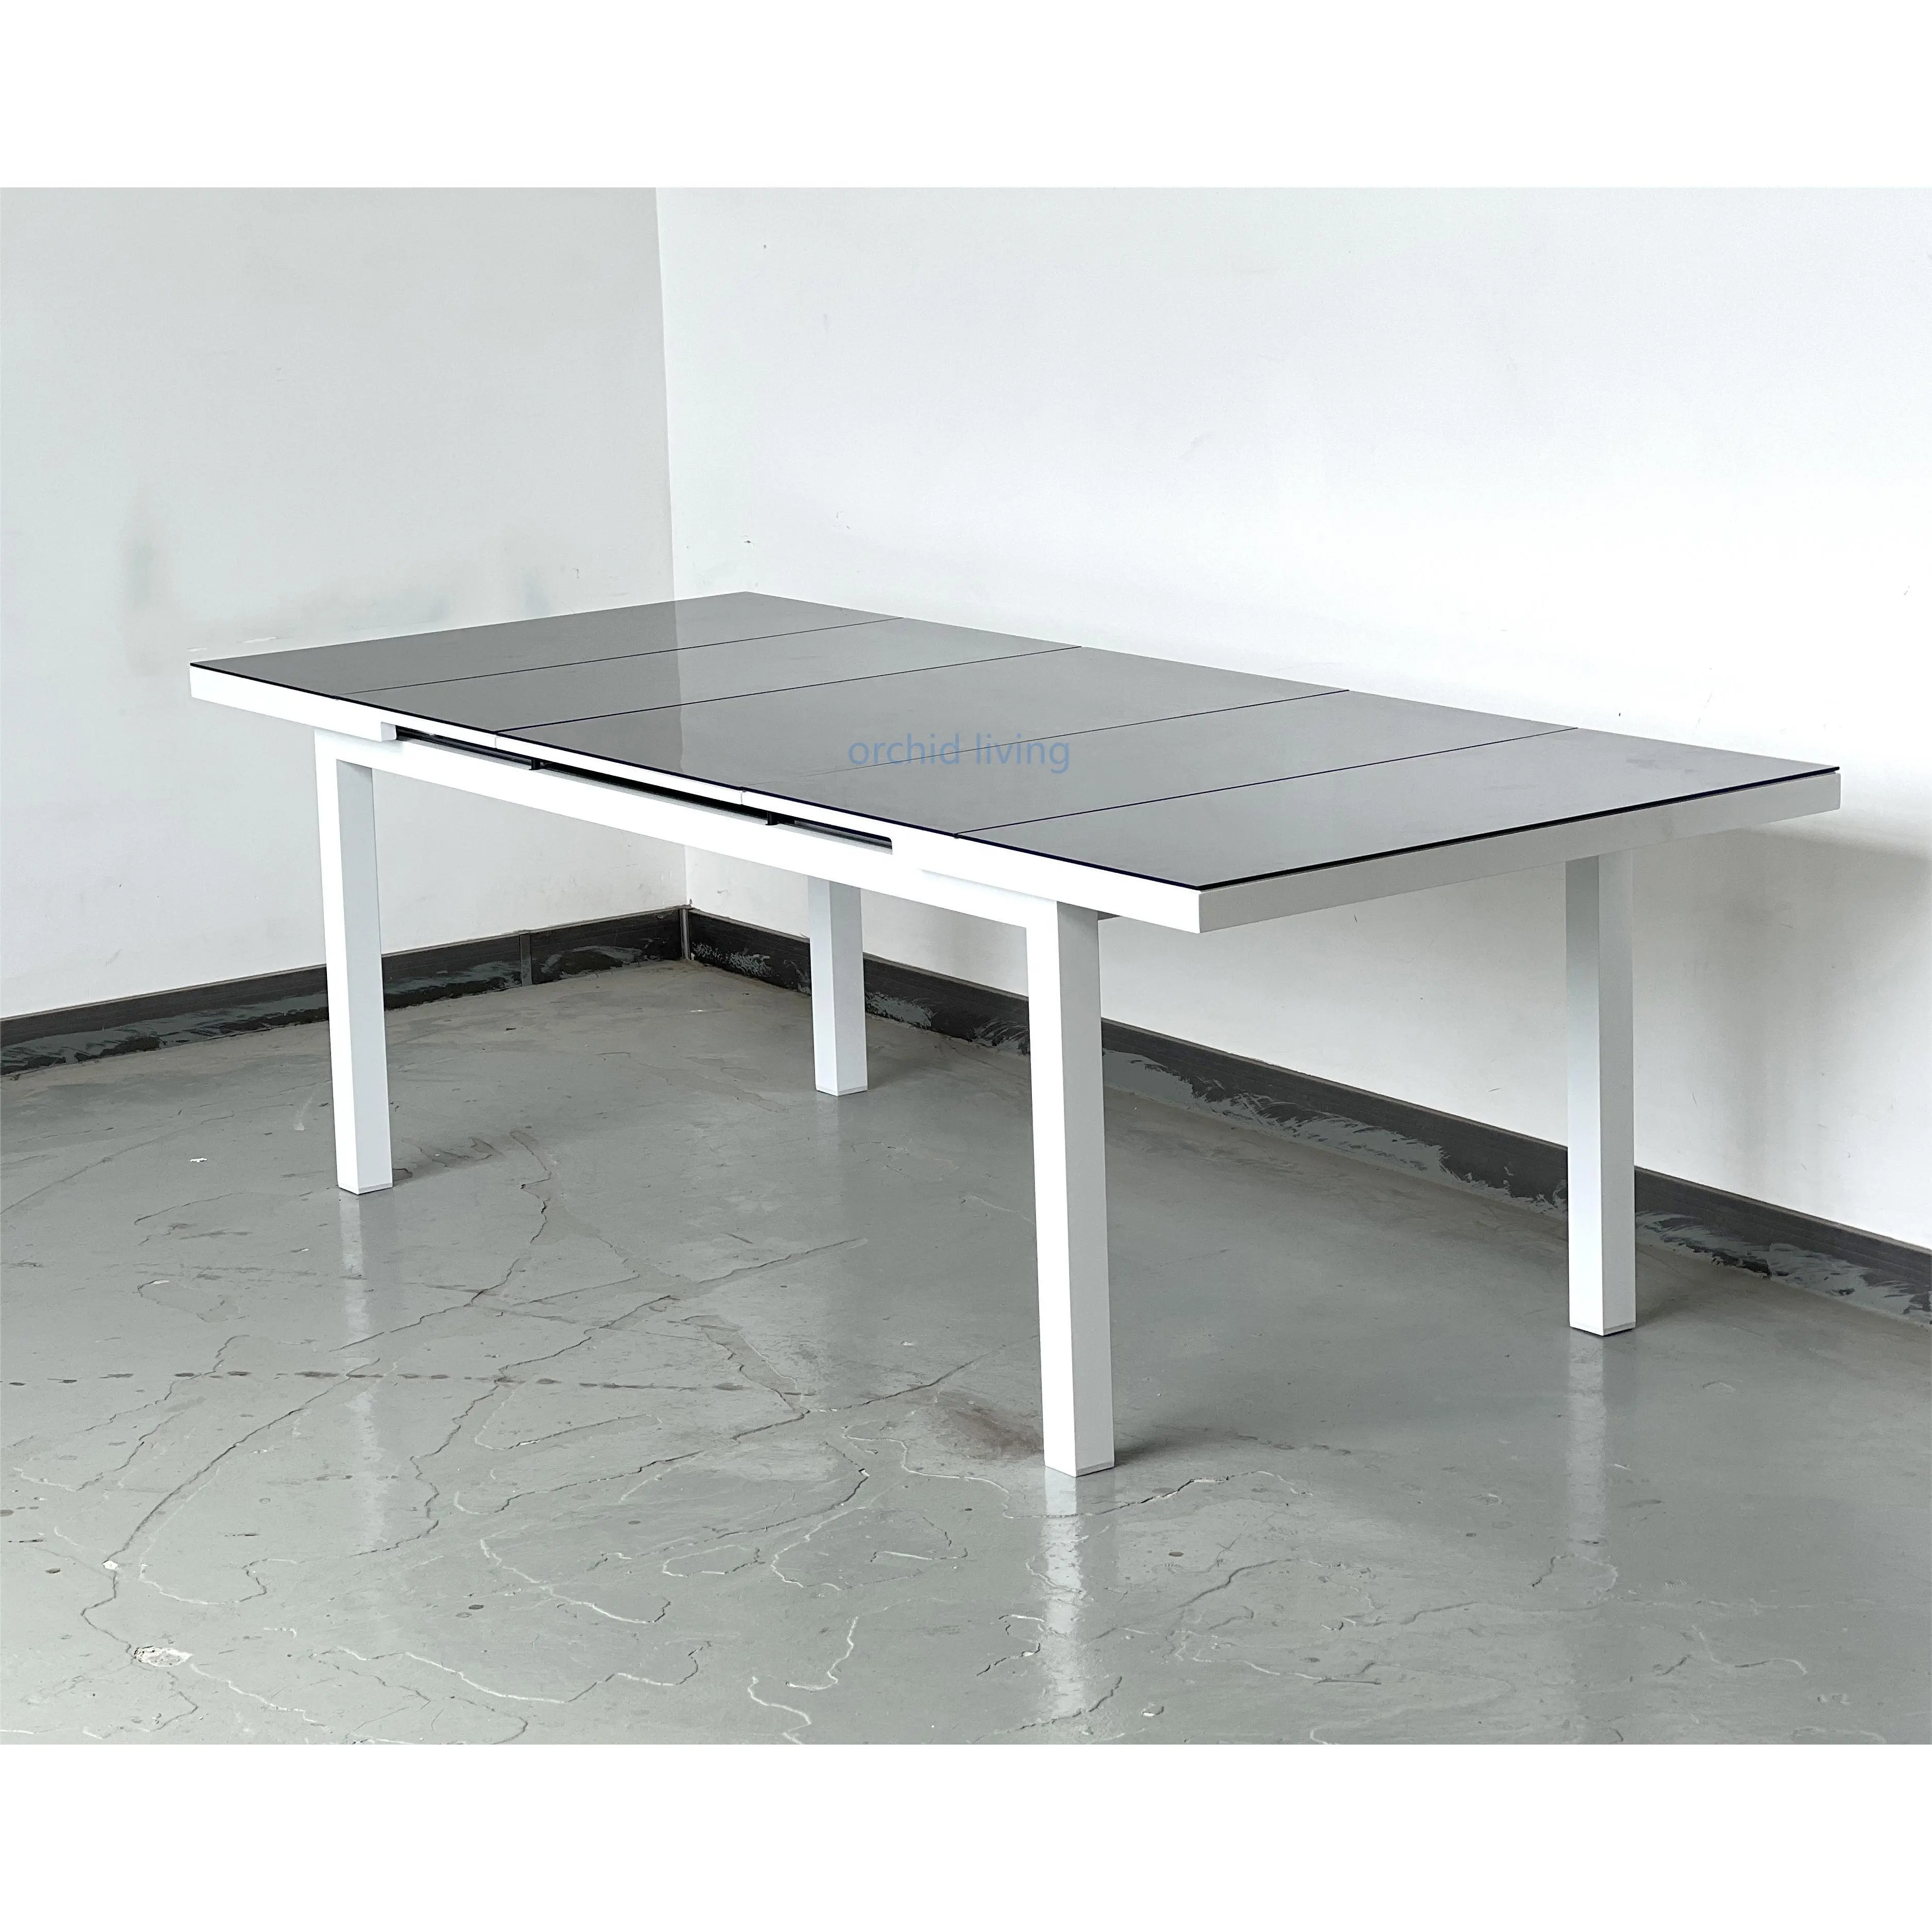 ダイニングテーブルガーデンパティオメタルダイニングテーブルと椅子セット屋外拡張可能ダイニングテーブル家具